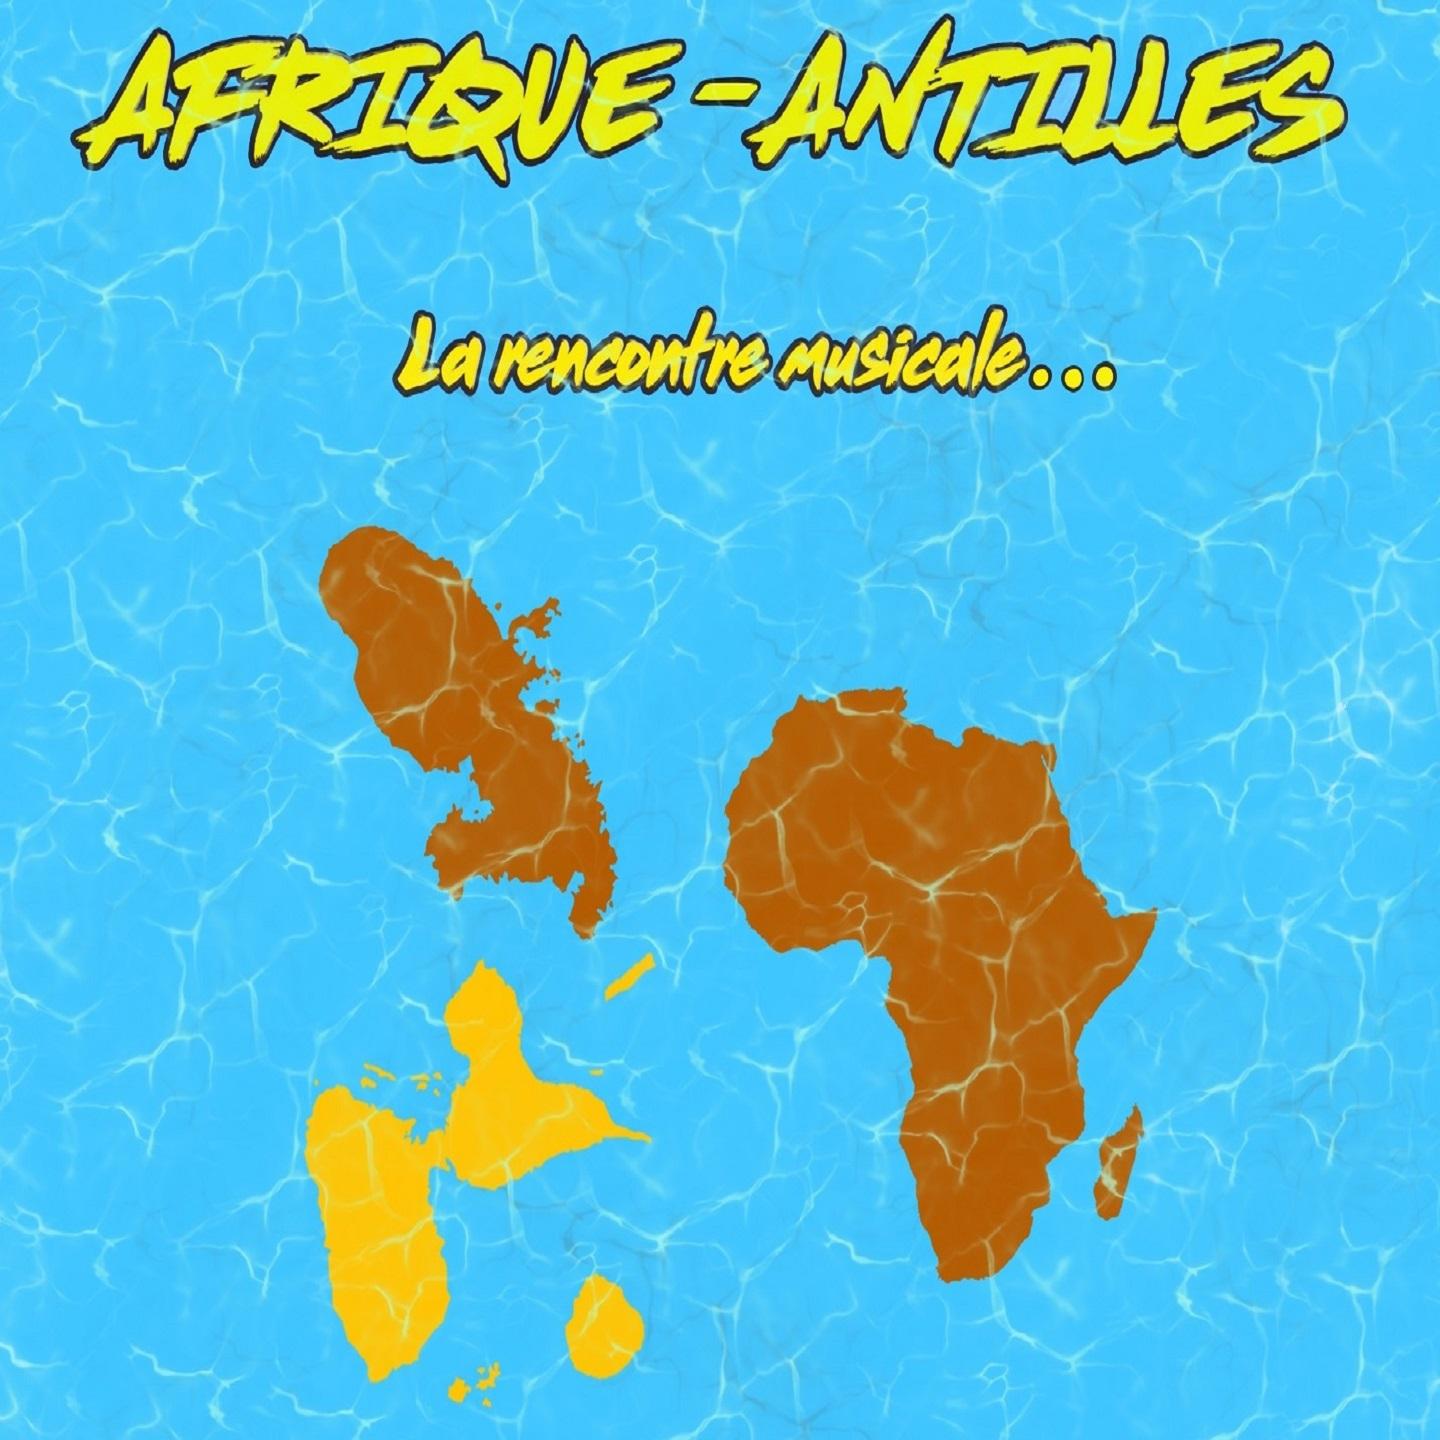 Afrique - Antilles (La rencontre musicale...)